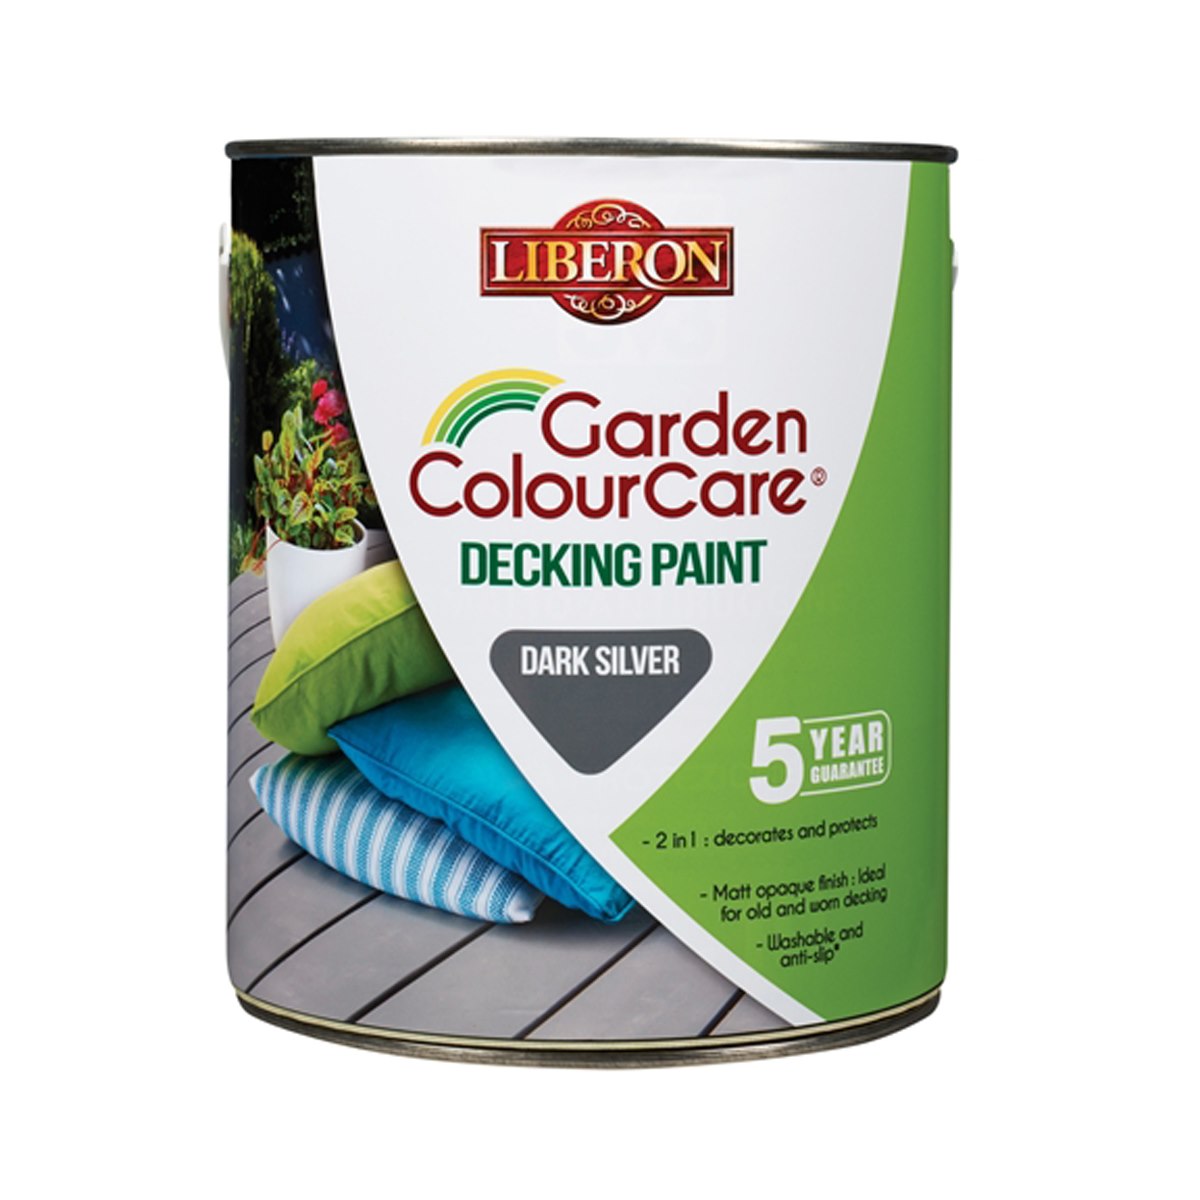 Liberon Garden ColourCare Decking Paint Dark Silver 2.5 Litre